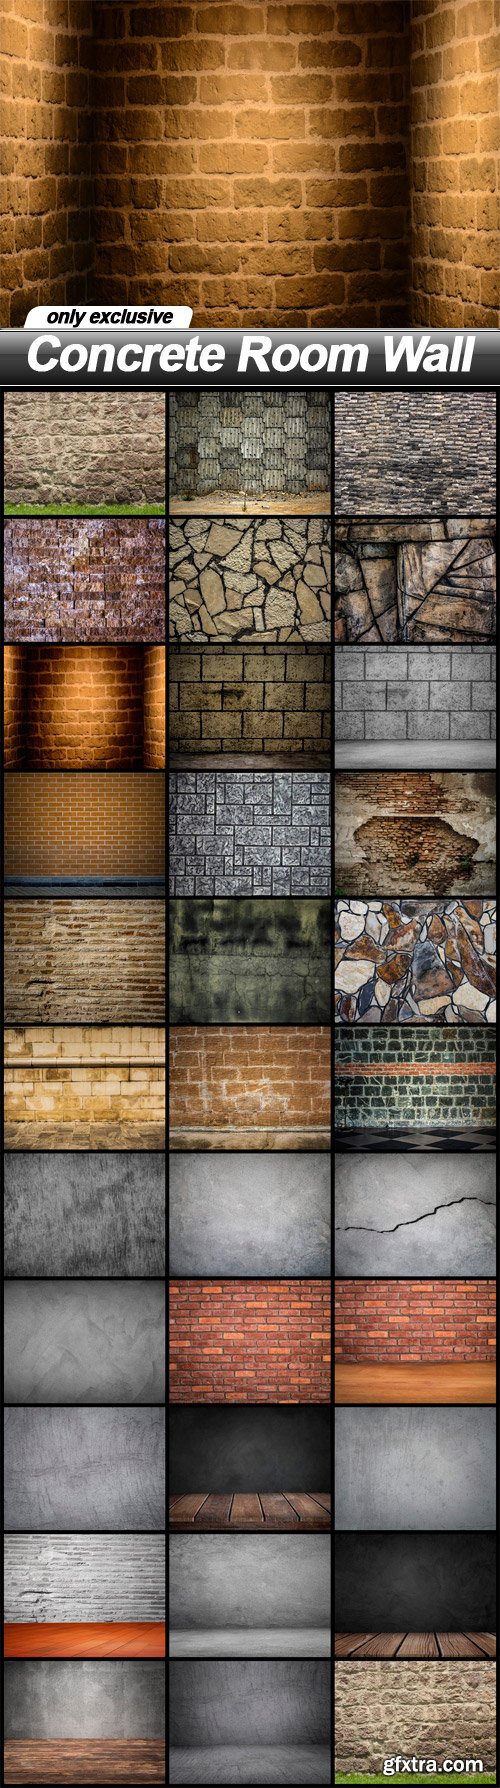 Concrete Room Wall - 32 UHQ JPEG